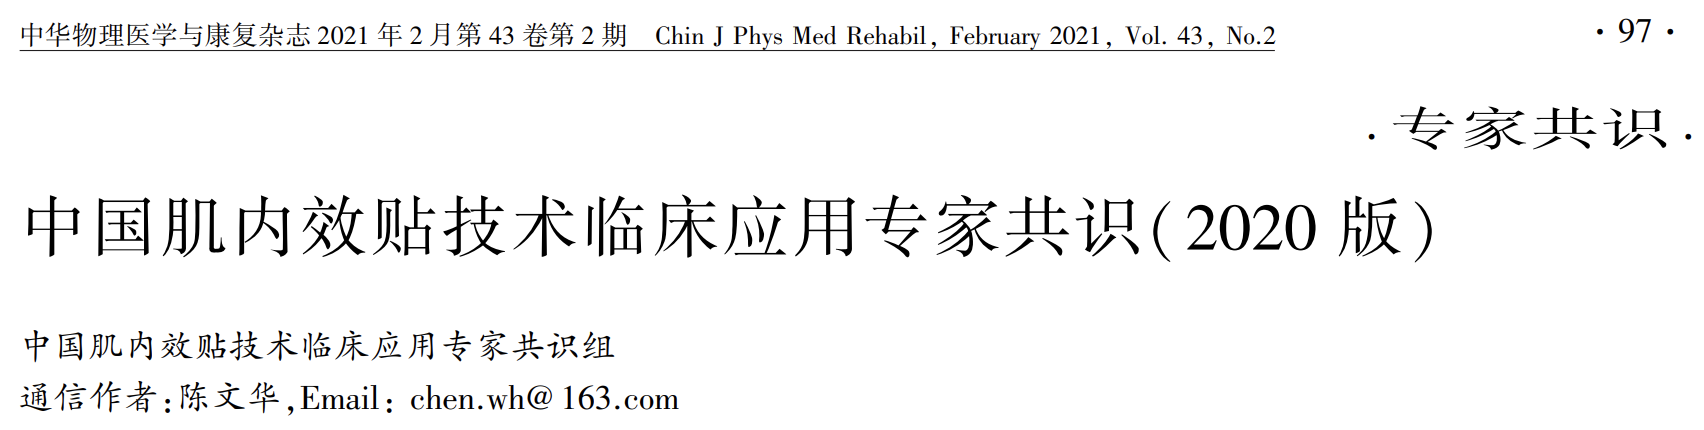 中国肌内效贴技术临床应用专家共识（2020），一文get要点！